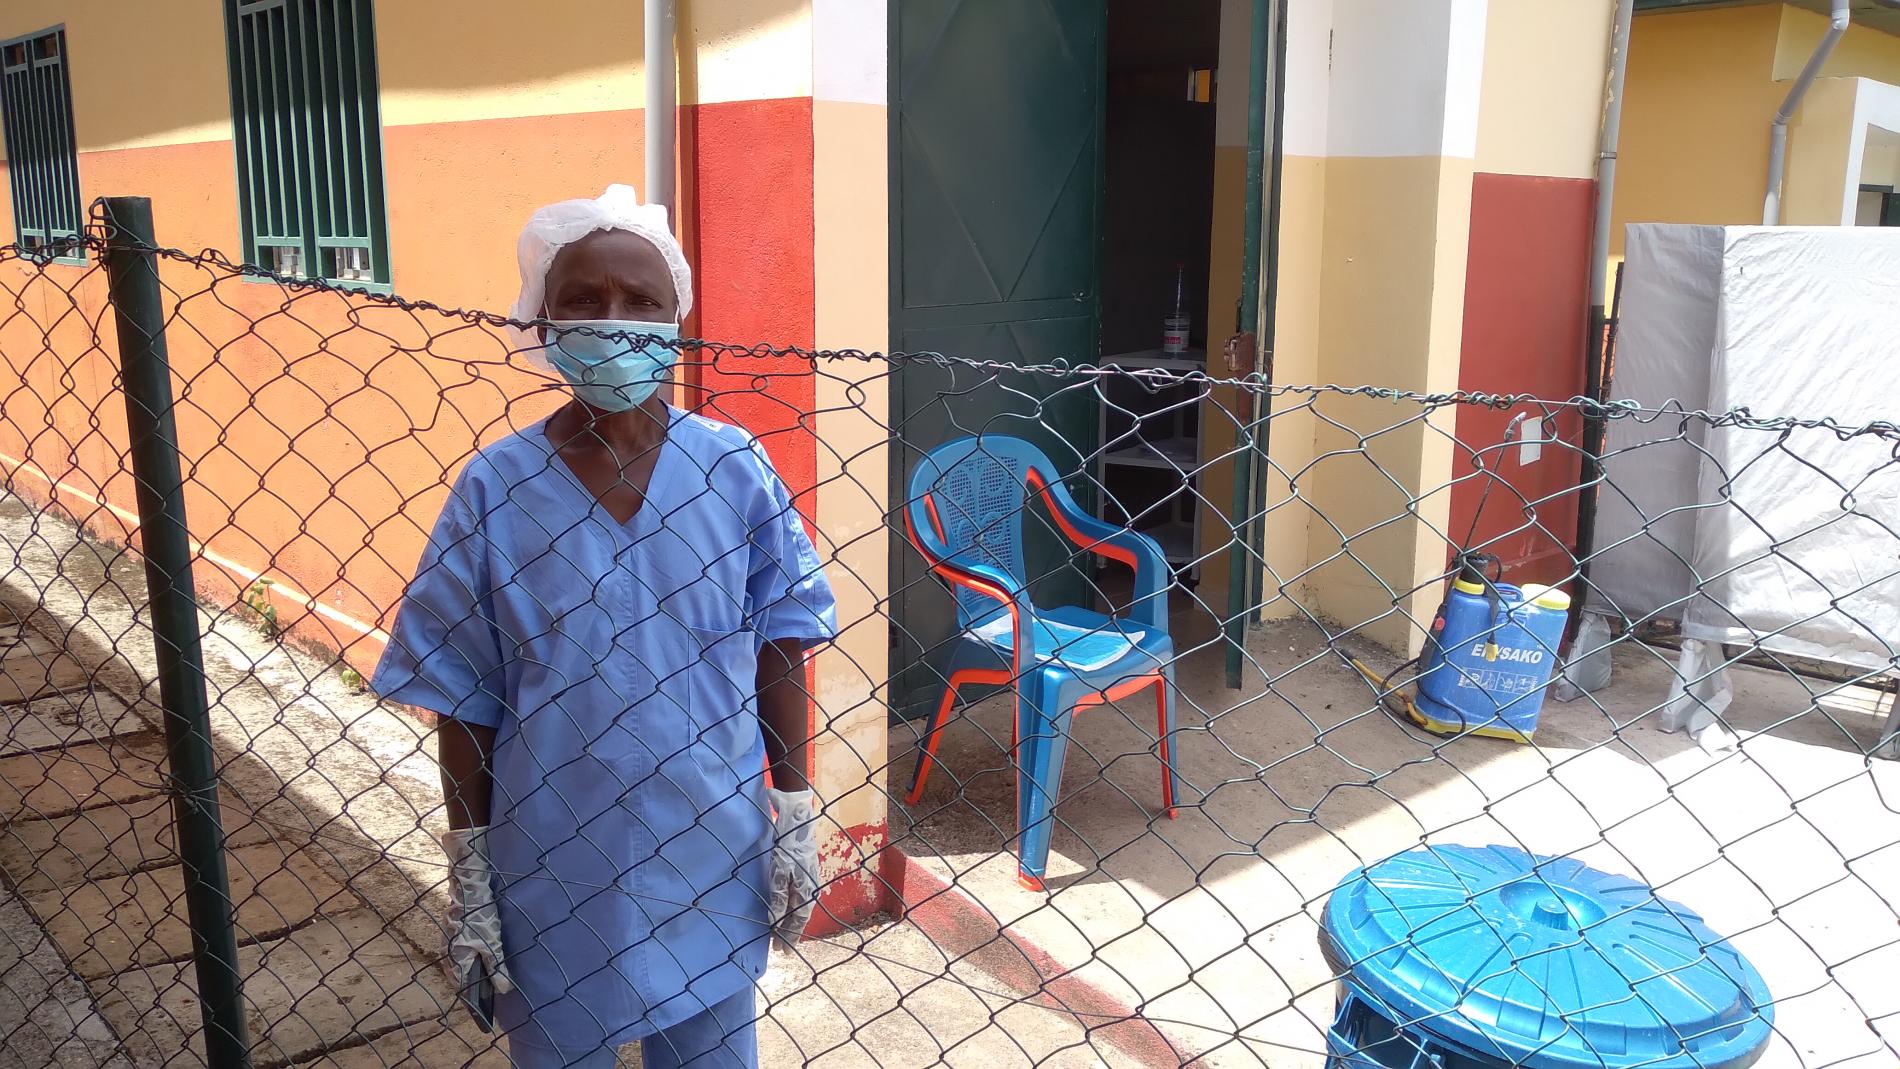 Aminata guérie Ebola et garde malade au centre de traitement